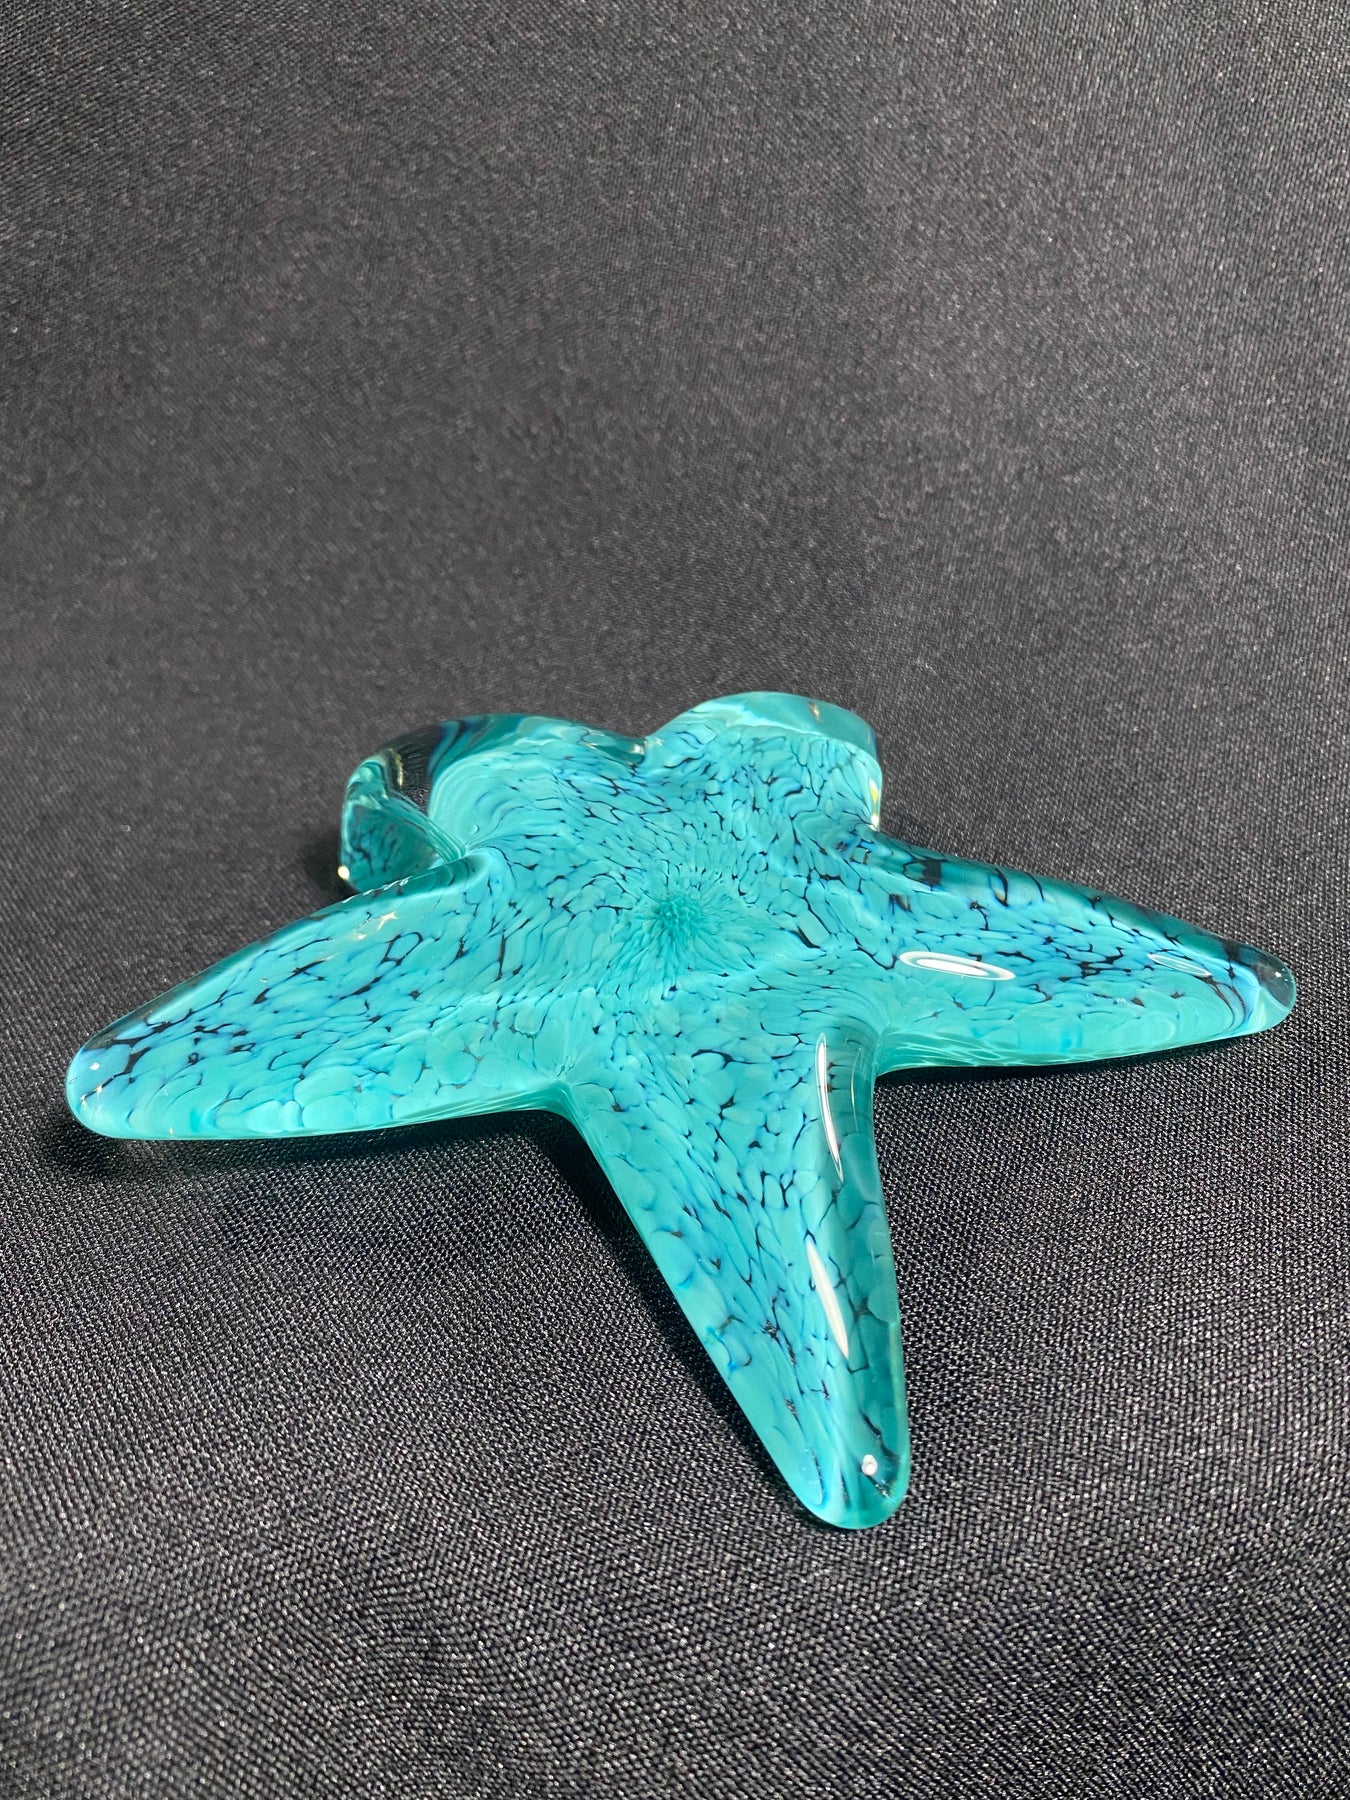 Handsculpted Glass Starfish – John Gibbons Glass